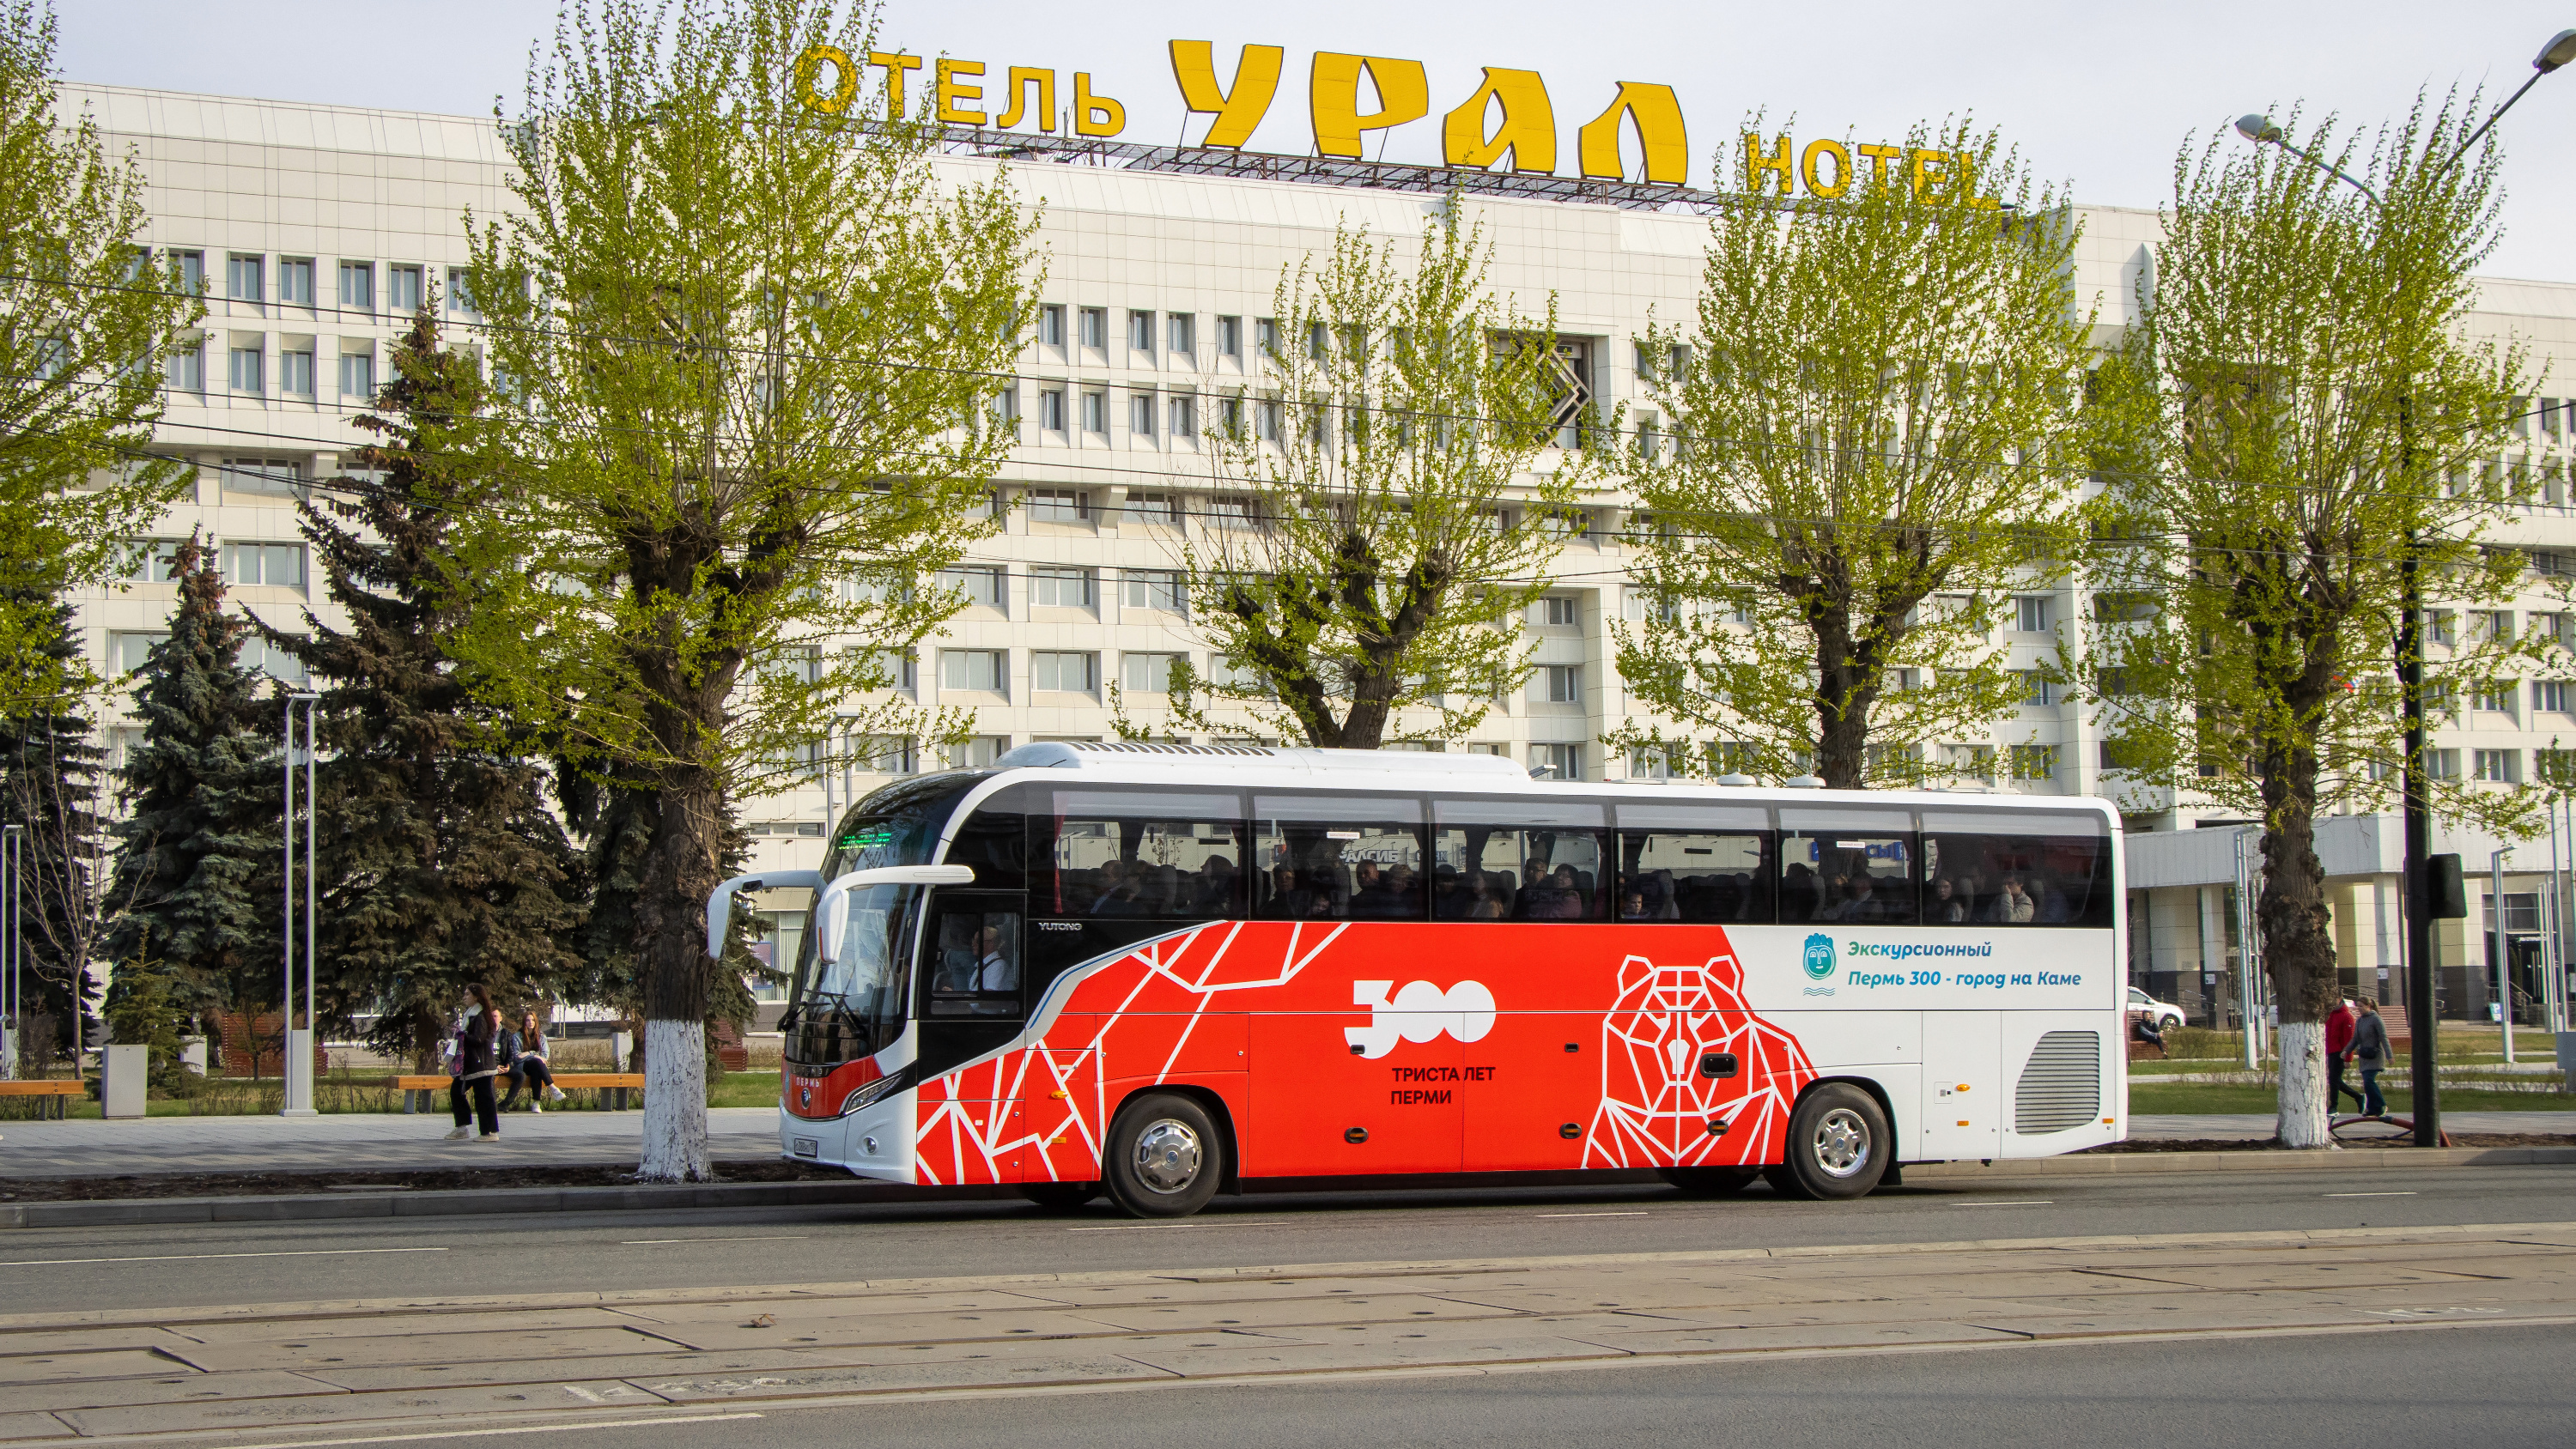 В Перми запускают экскурсионный автобус 300т по историческим местам. Тест-драйв 59.RU